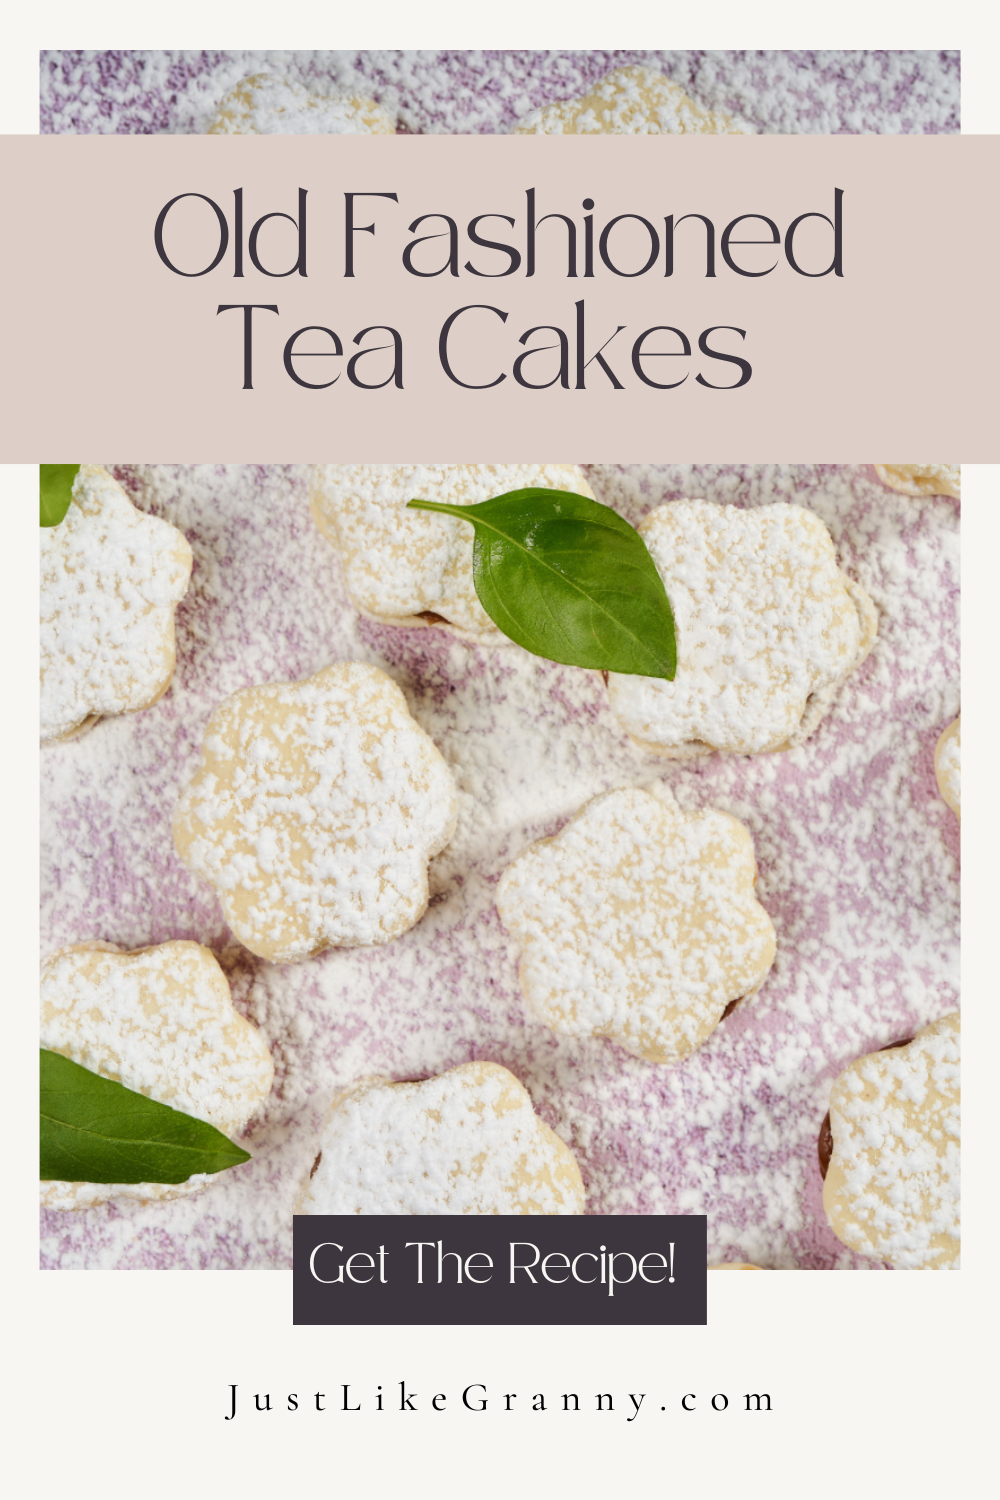 Grandma's Old Fashioned Tea Cakes Recipe